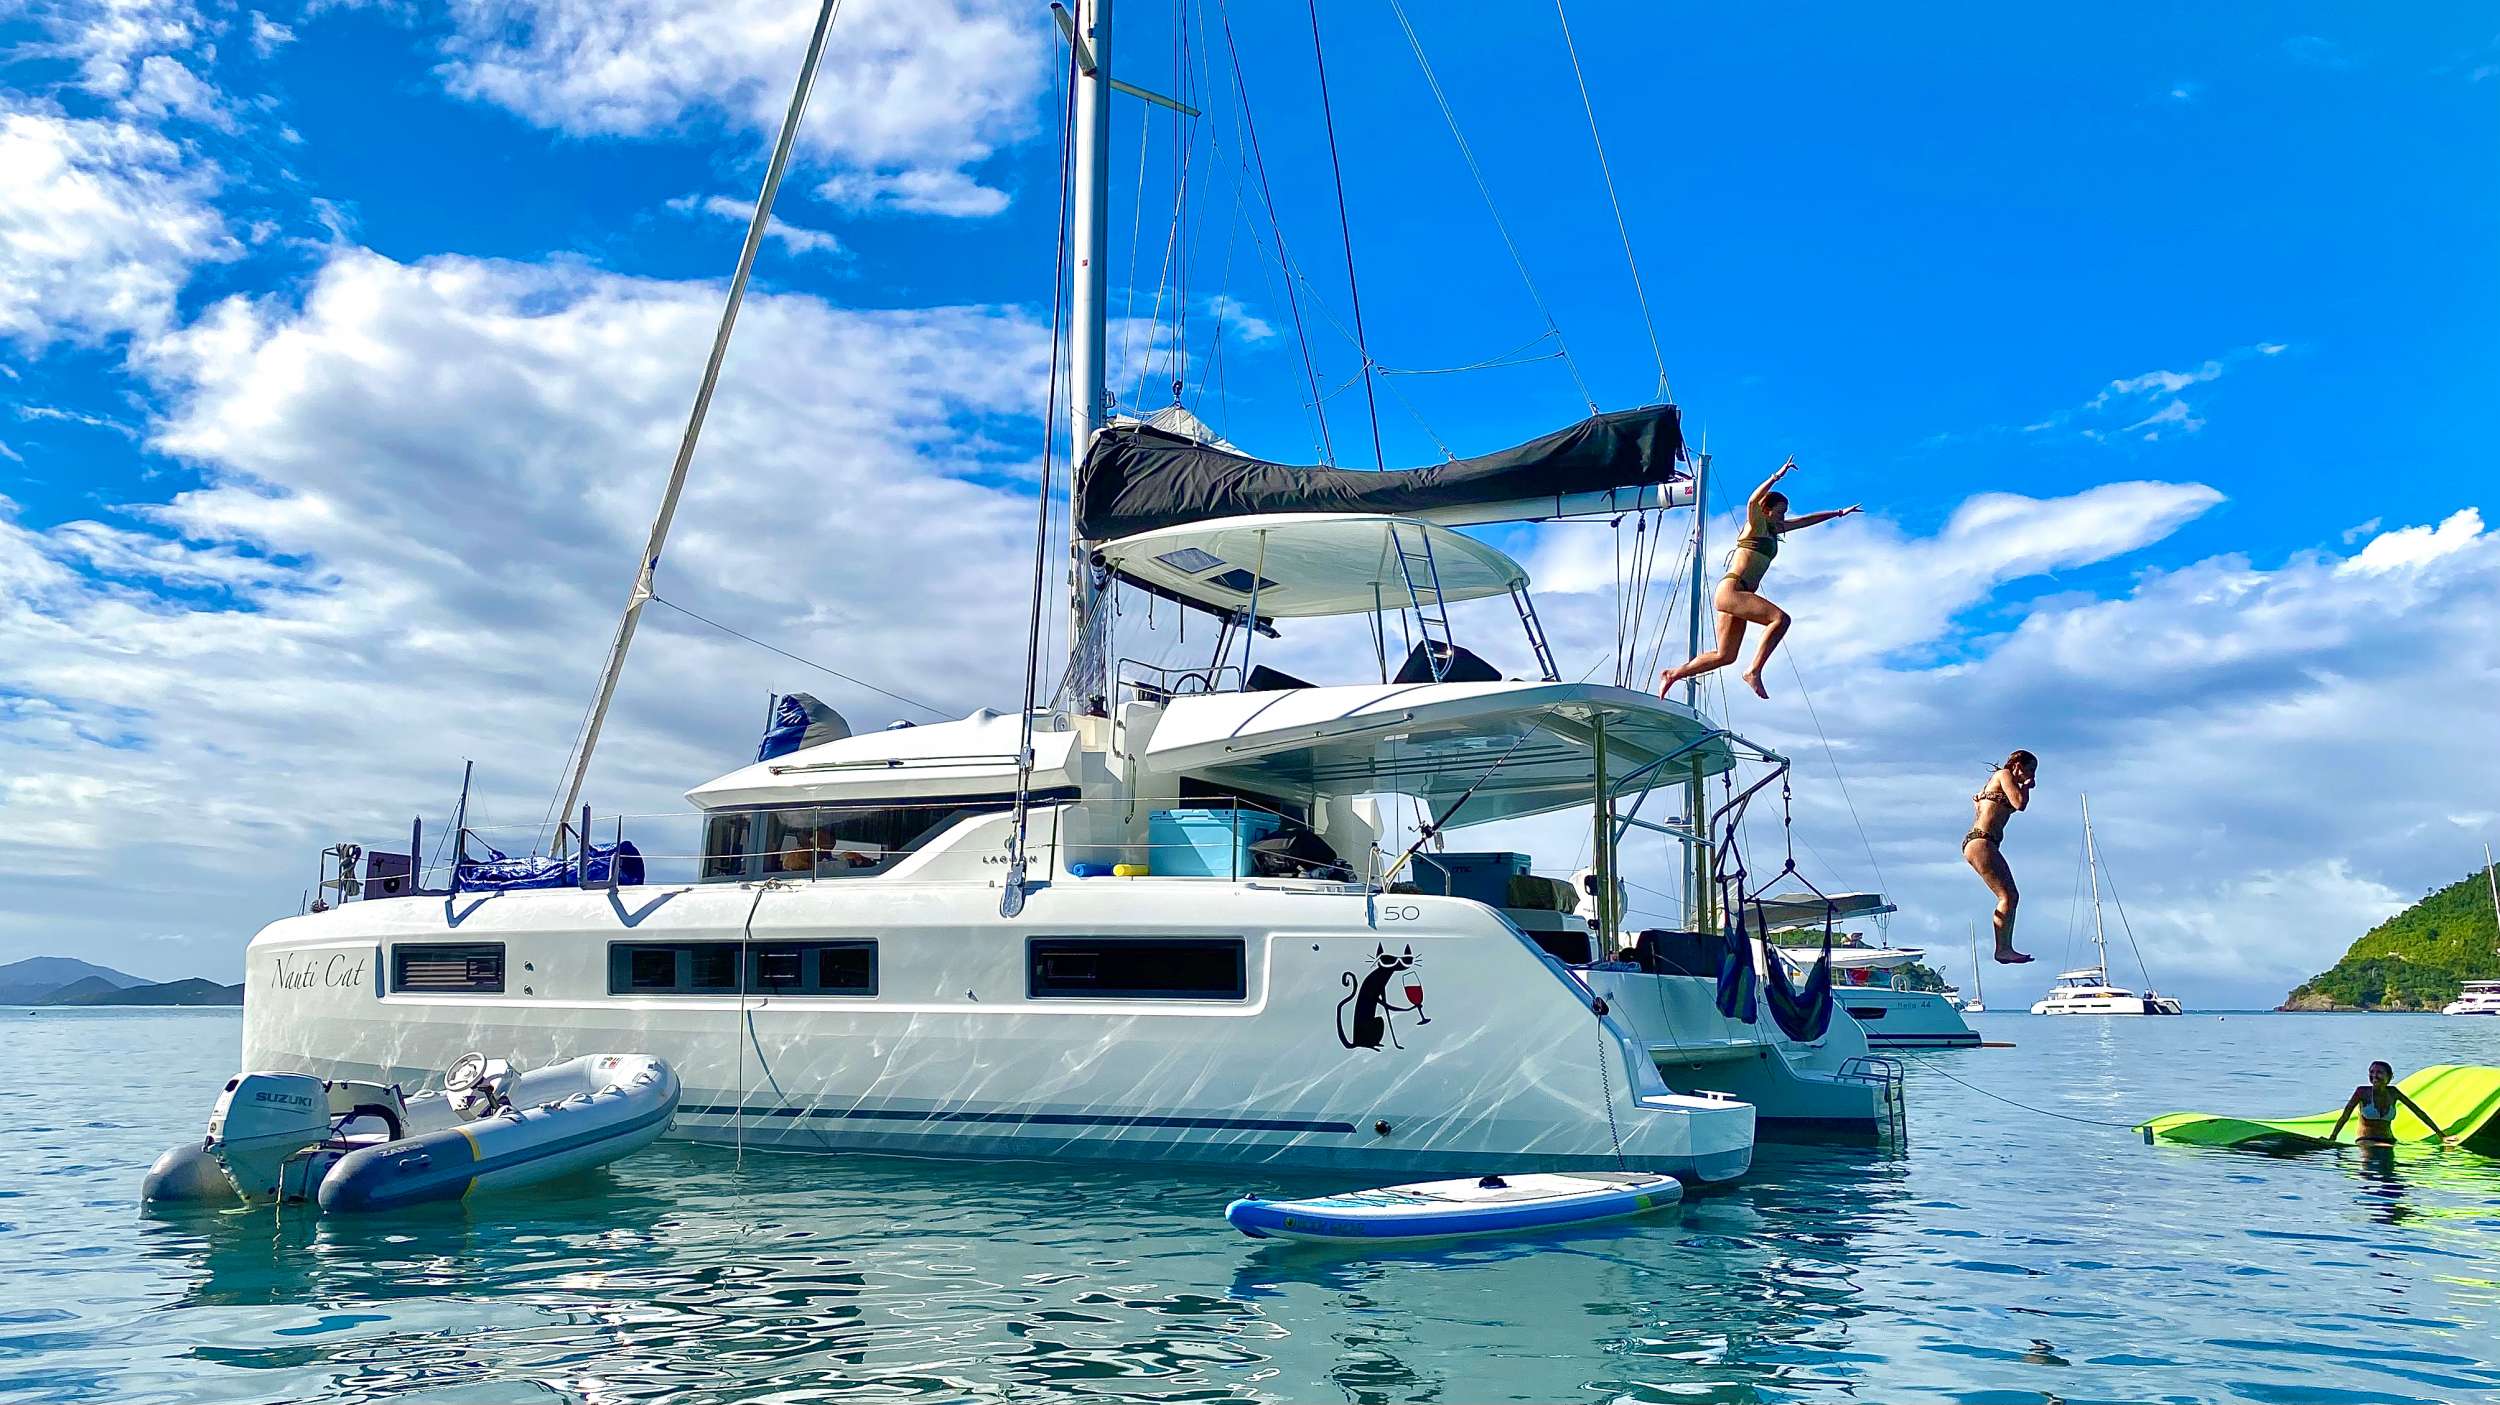 NAUTI CAT - Luxury yacht charter Bahamas & Boat hire in Bahamas 1